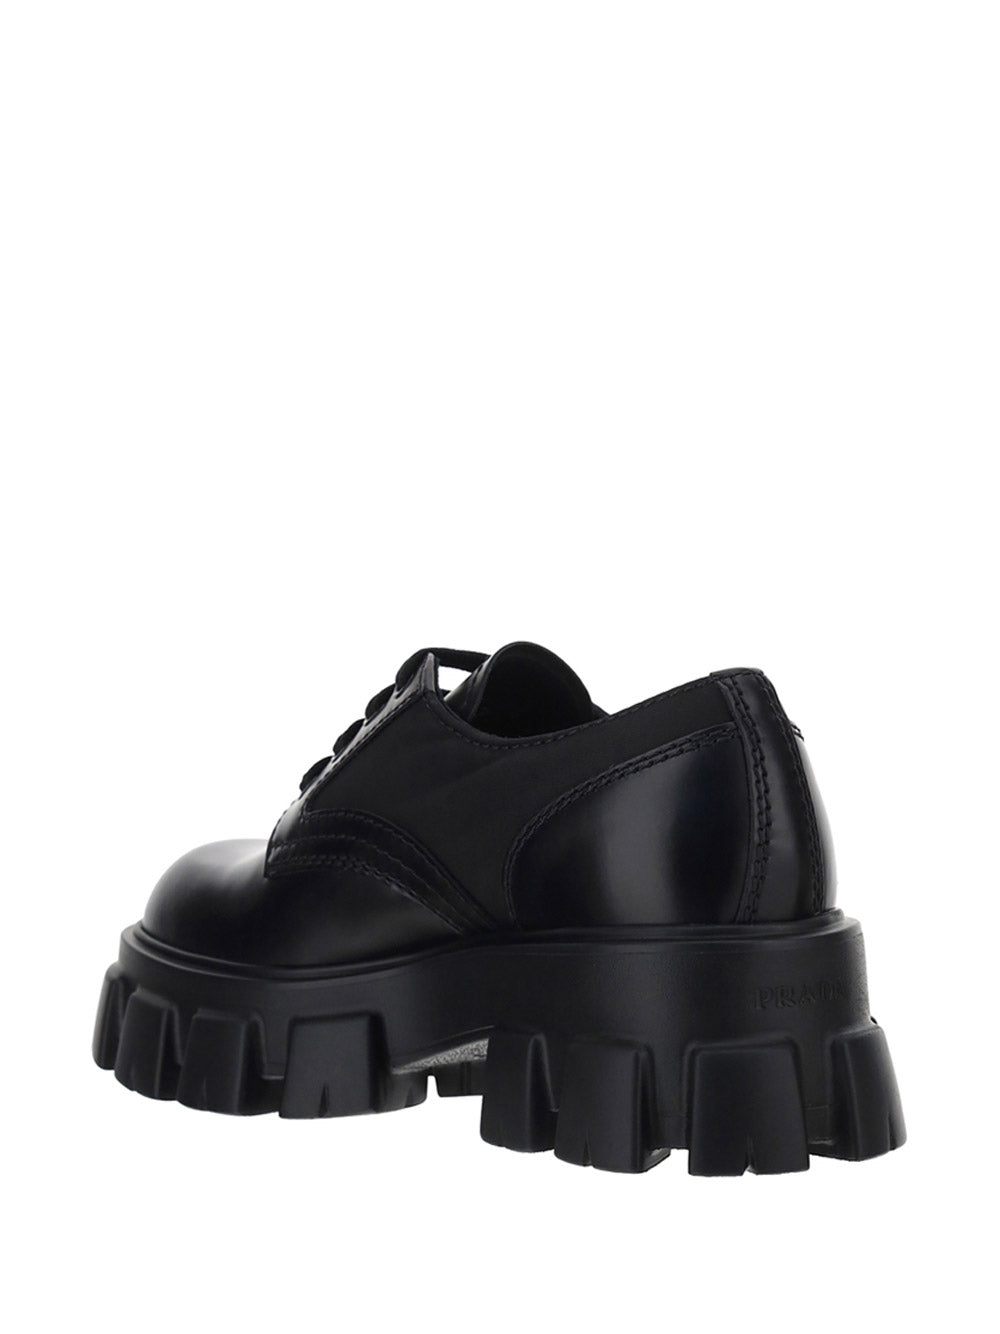 Monolith Brushed Rois Leather & Nylon Lace-up Shoes - Black